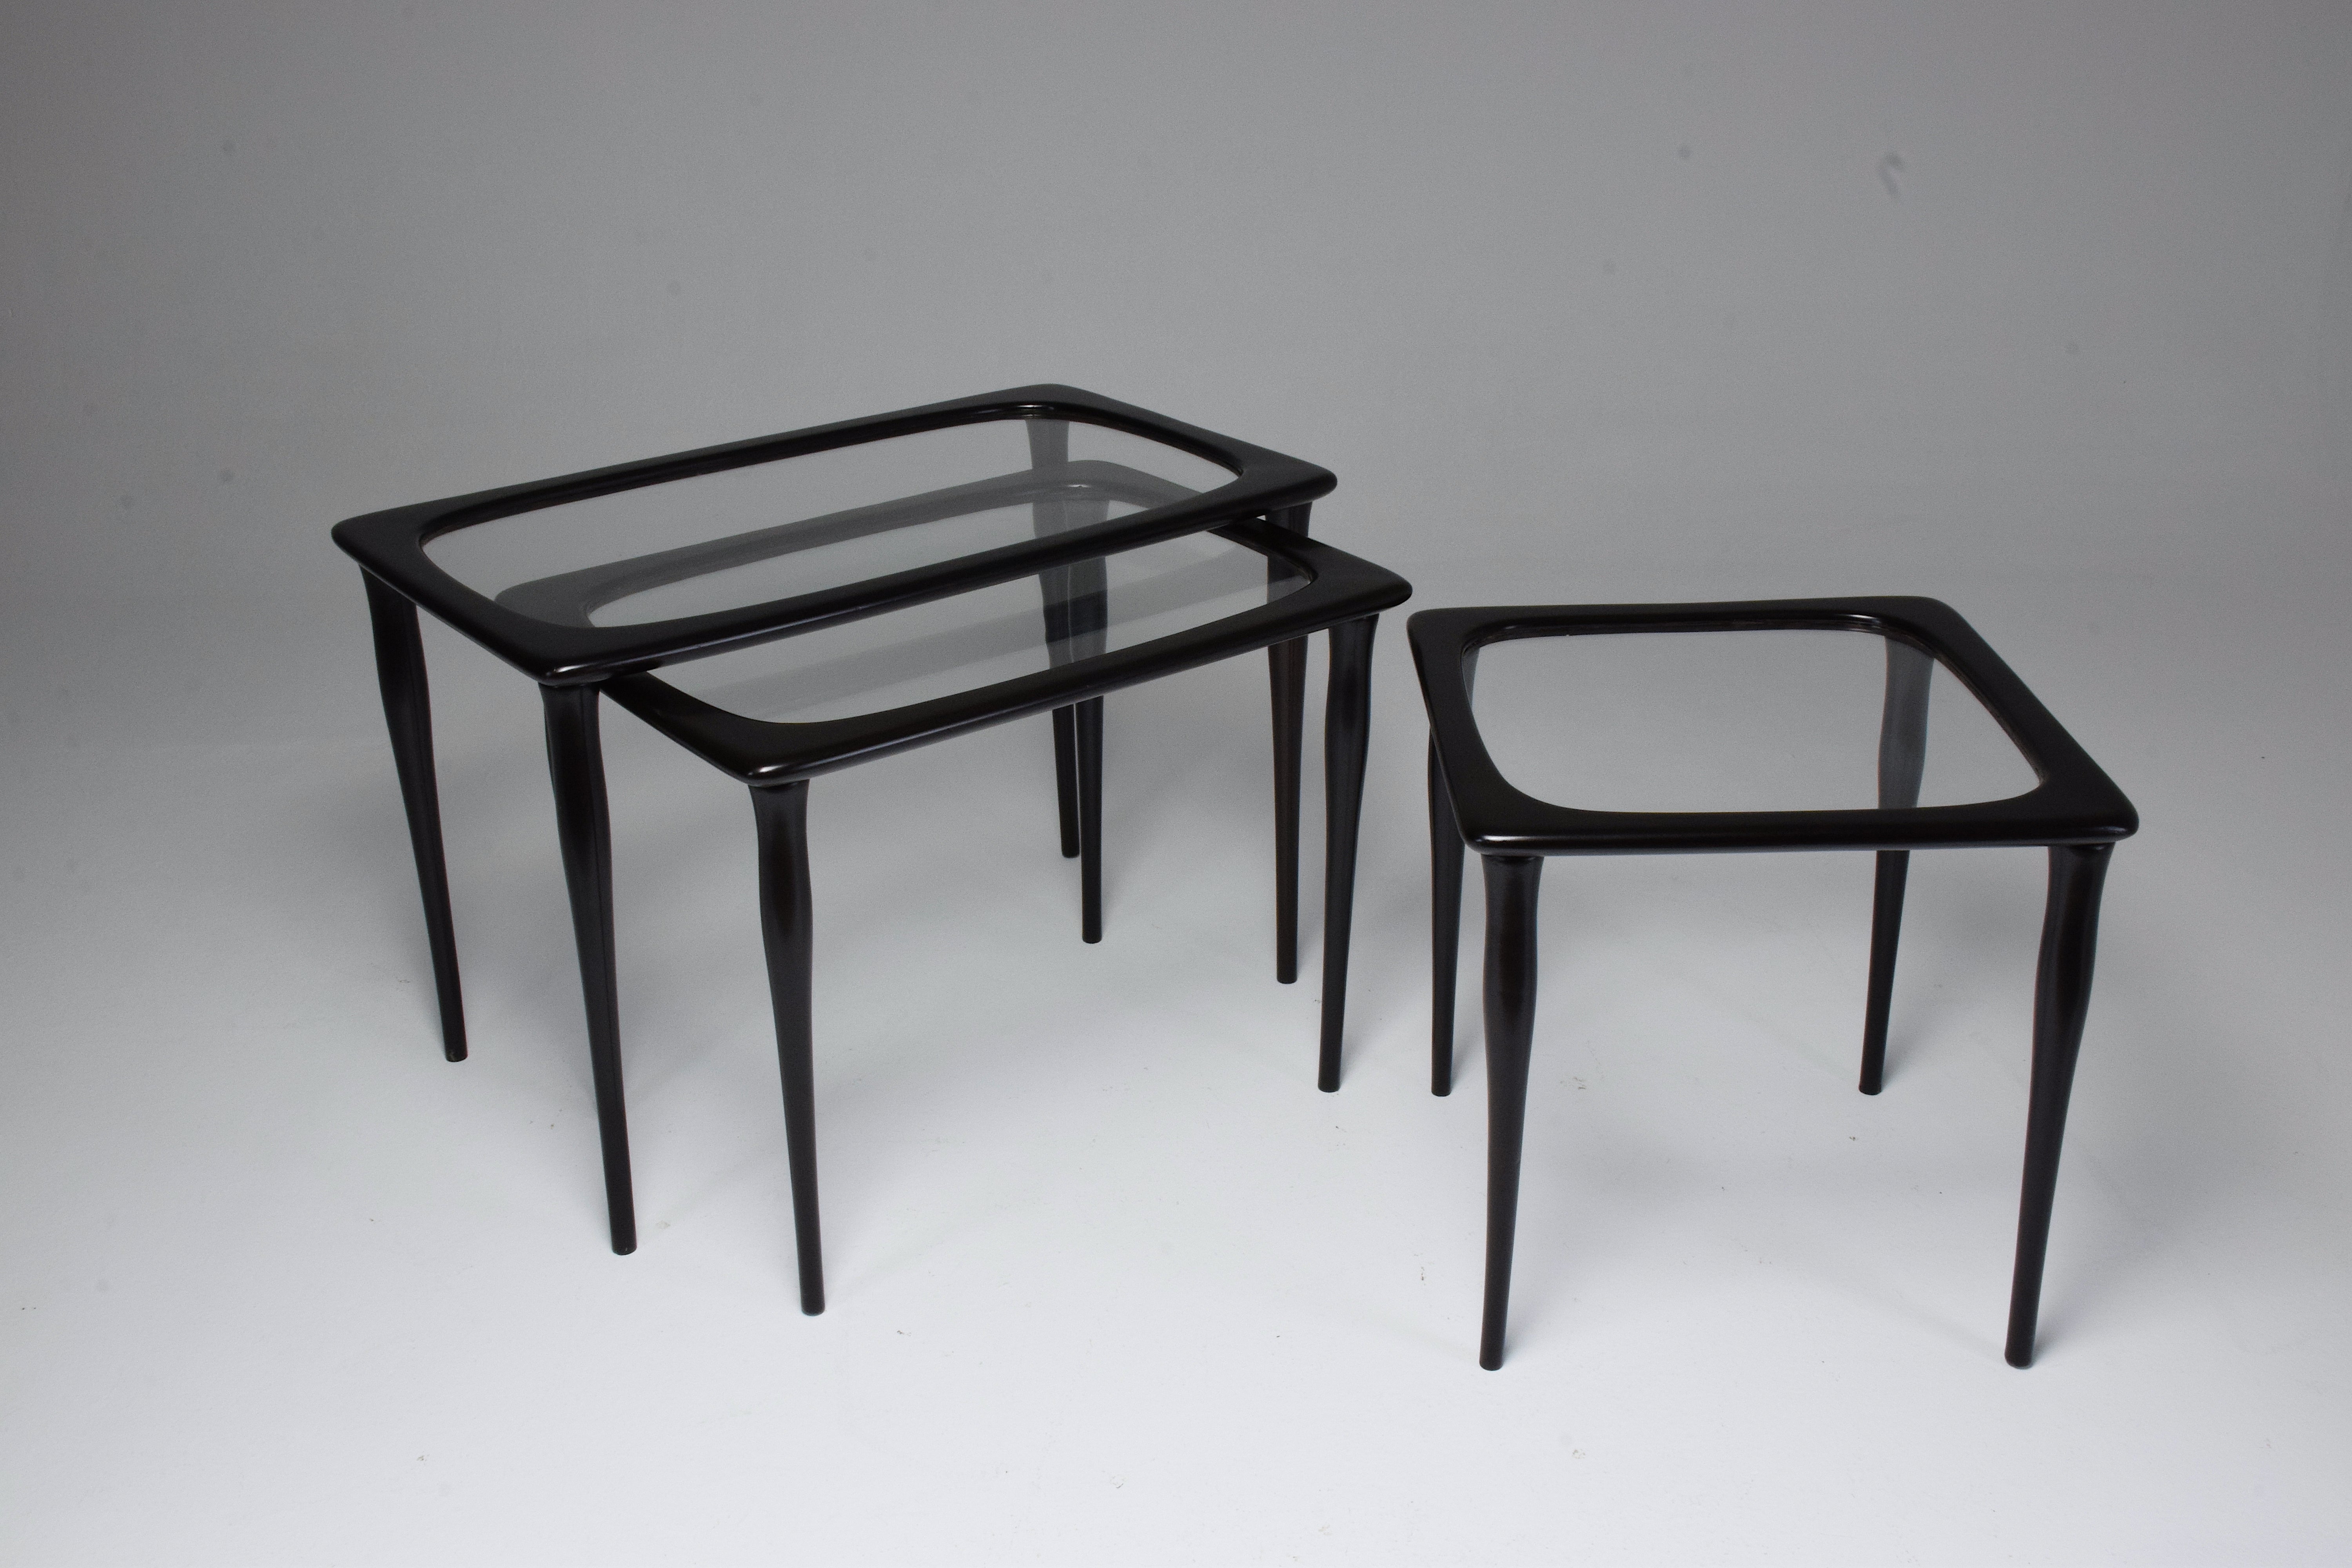 Un ensemble exquis de trois tables d'appoint ou tables basses gigognes vintage, fabriquées par le célèbre designer de meubles italien Ico Parisi dans les années 1950. Ils témoignent de l'approche visionnaire de Parisi en matière de conception de